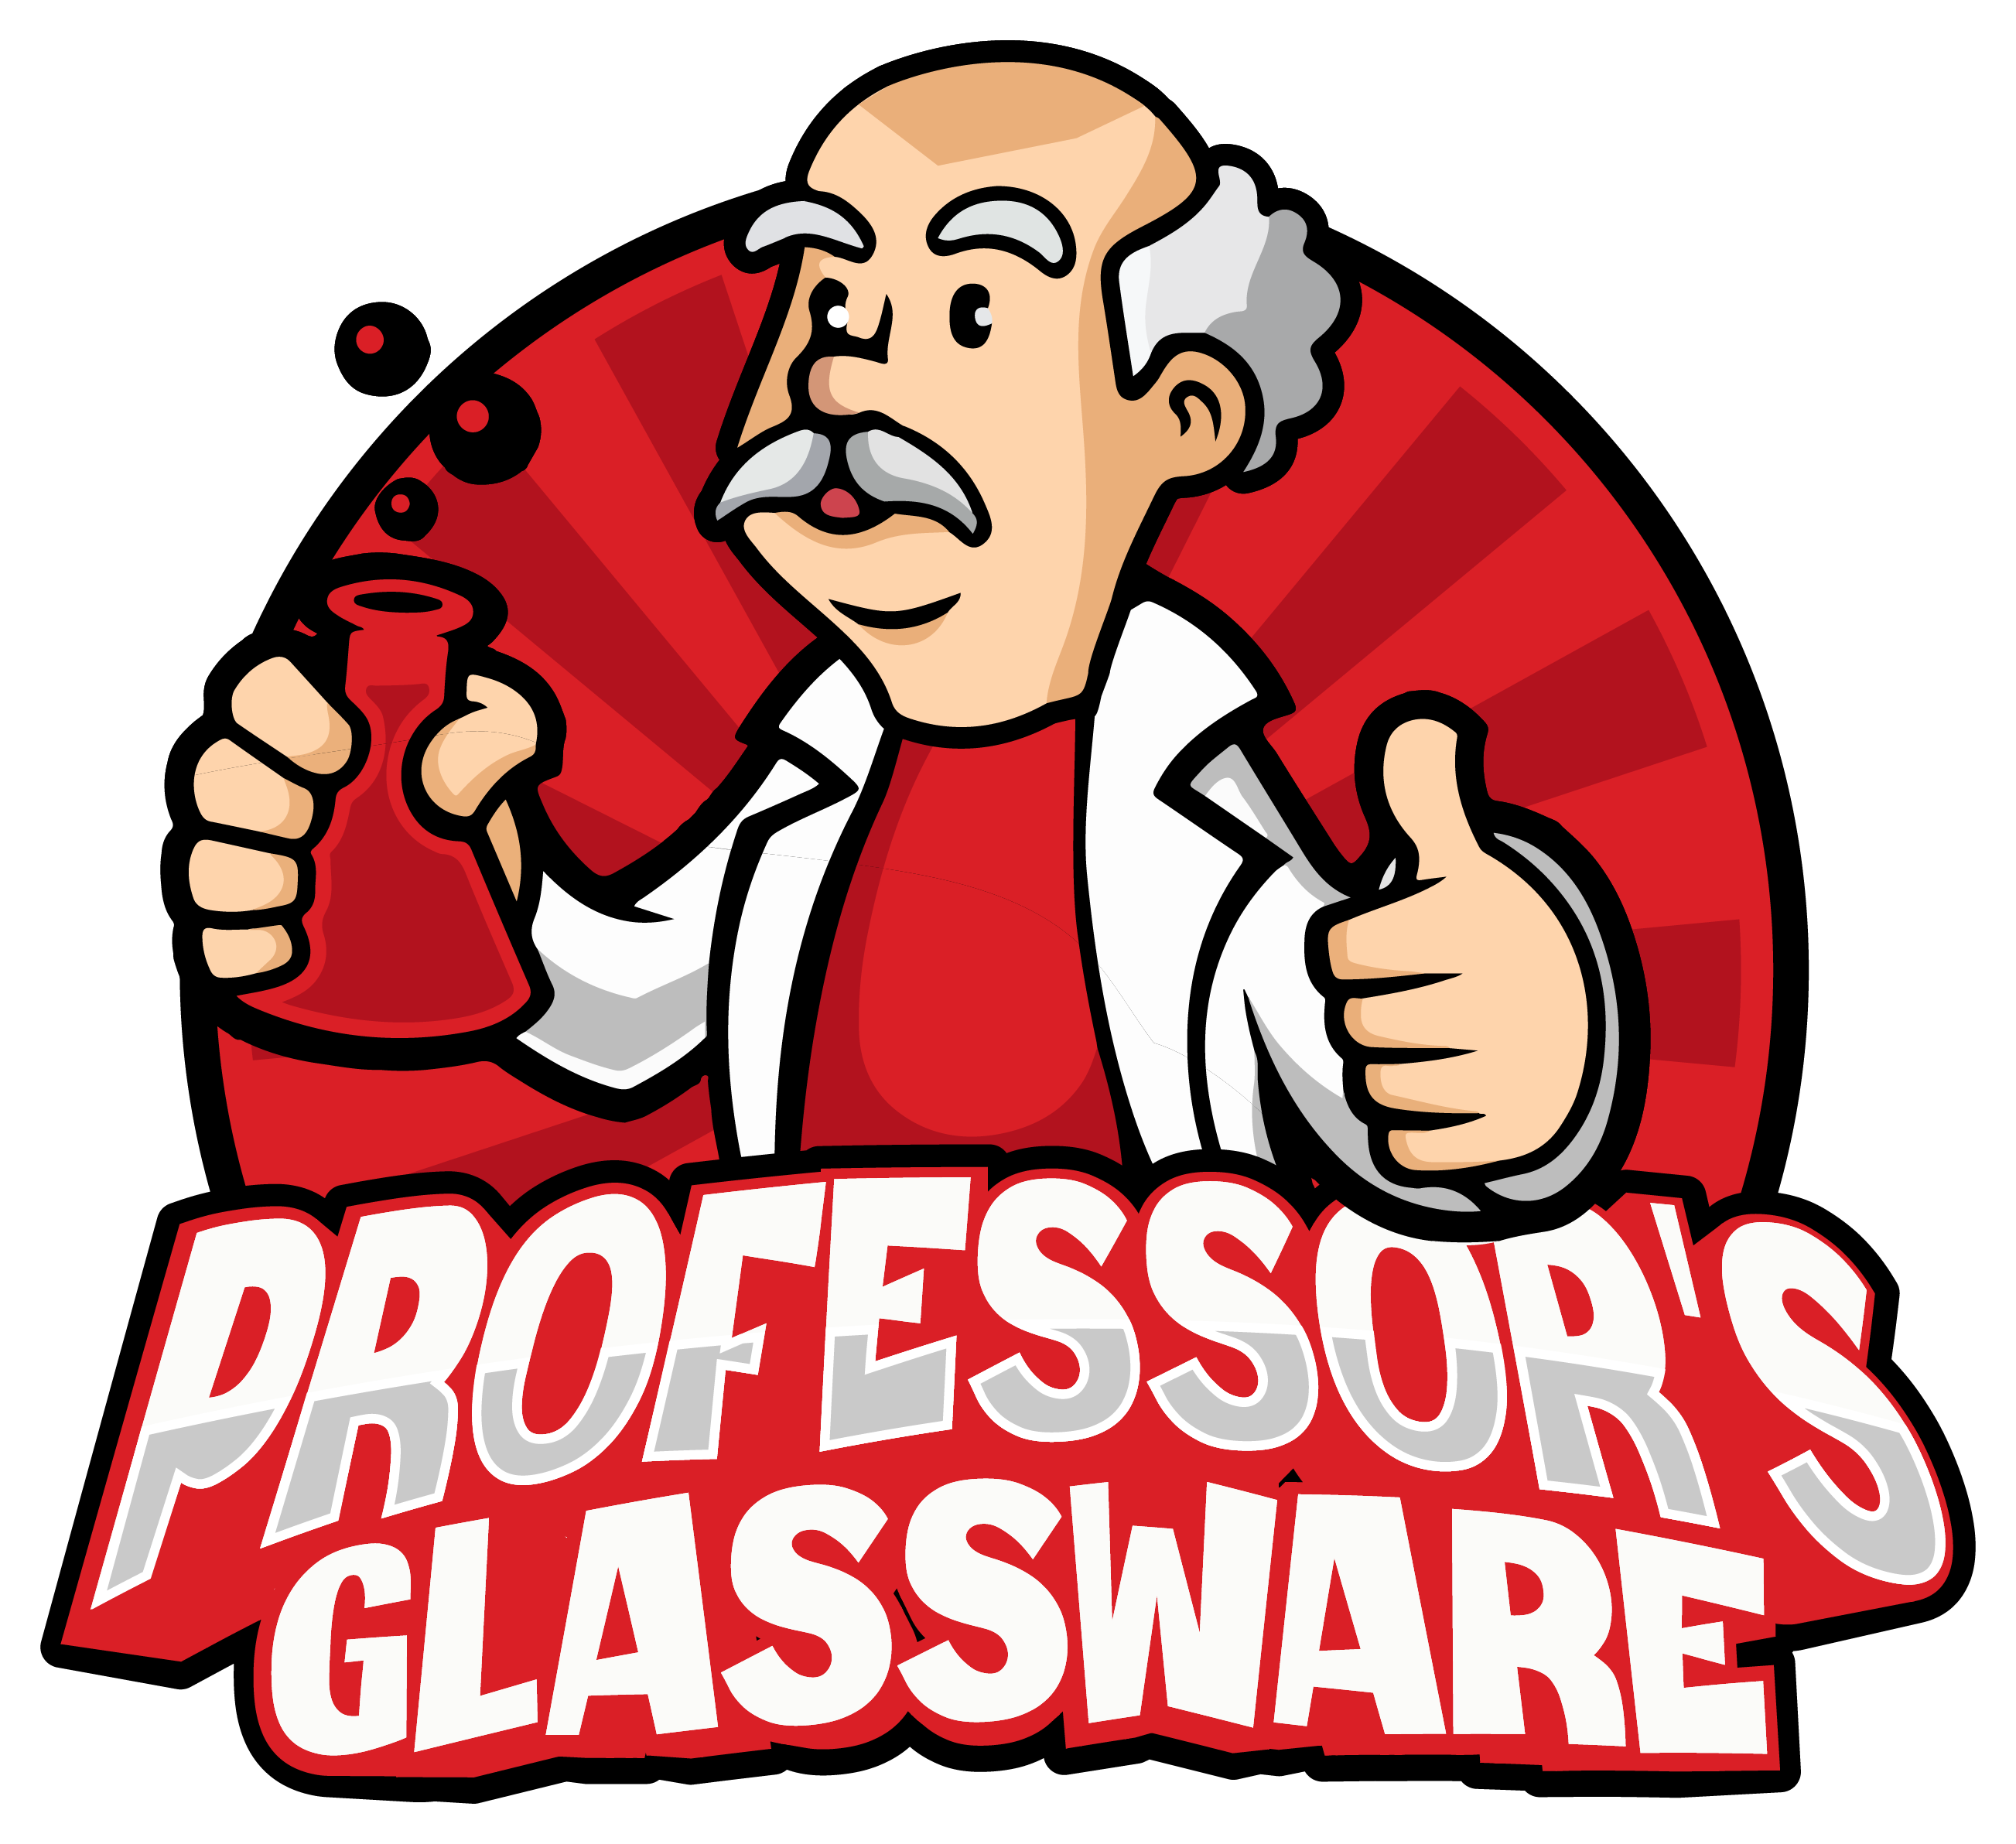 ProfessorsGlassware